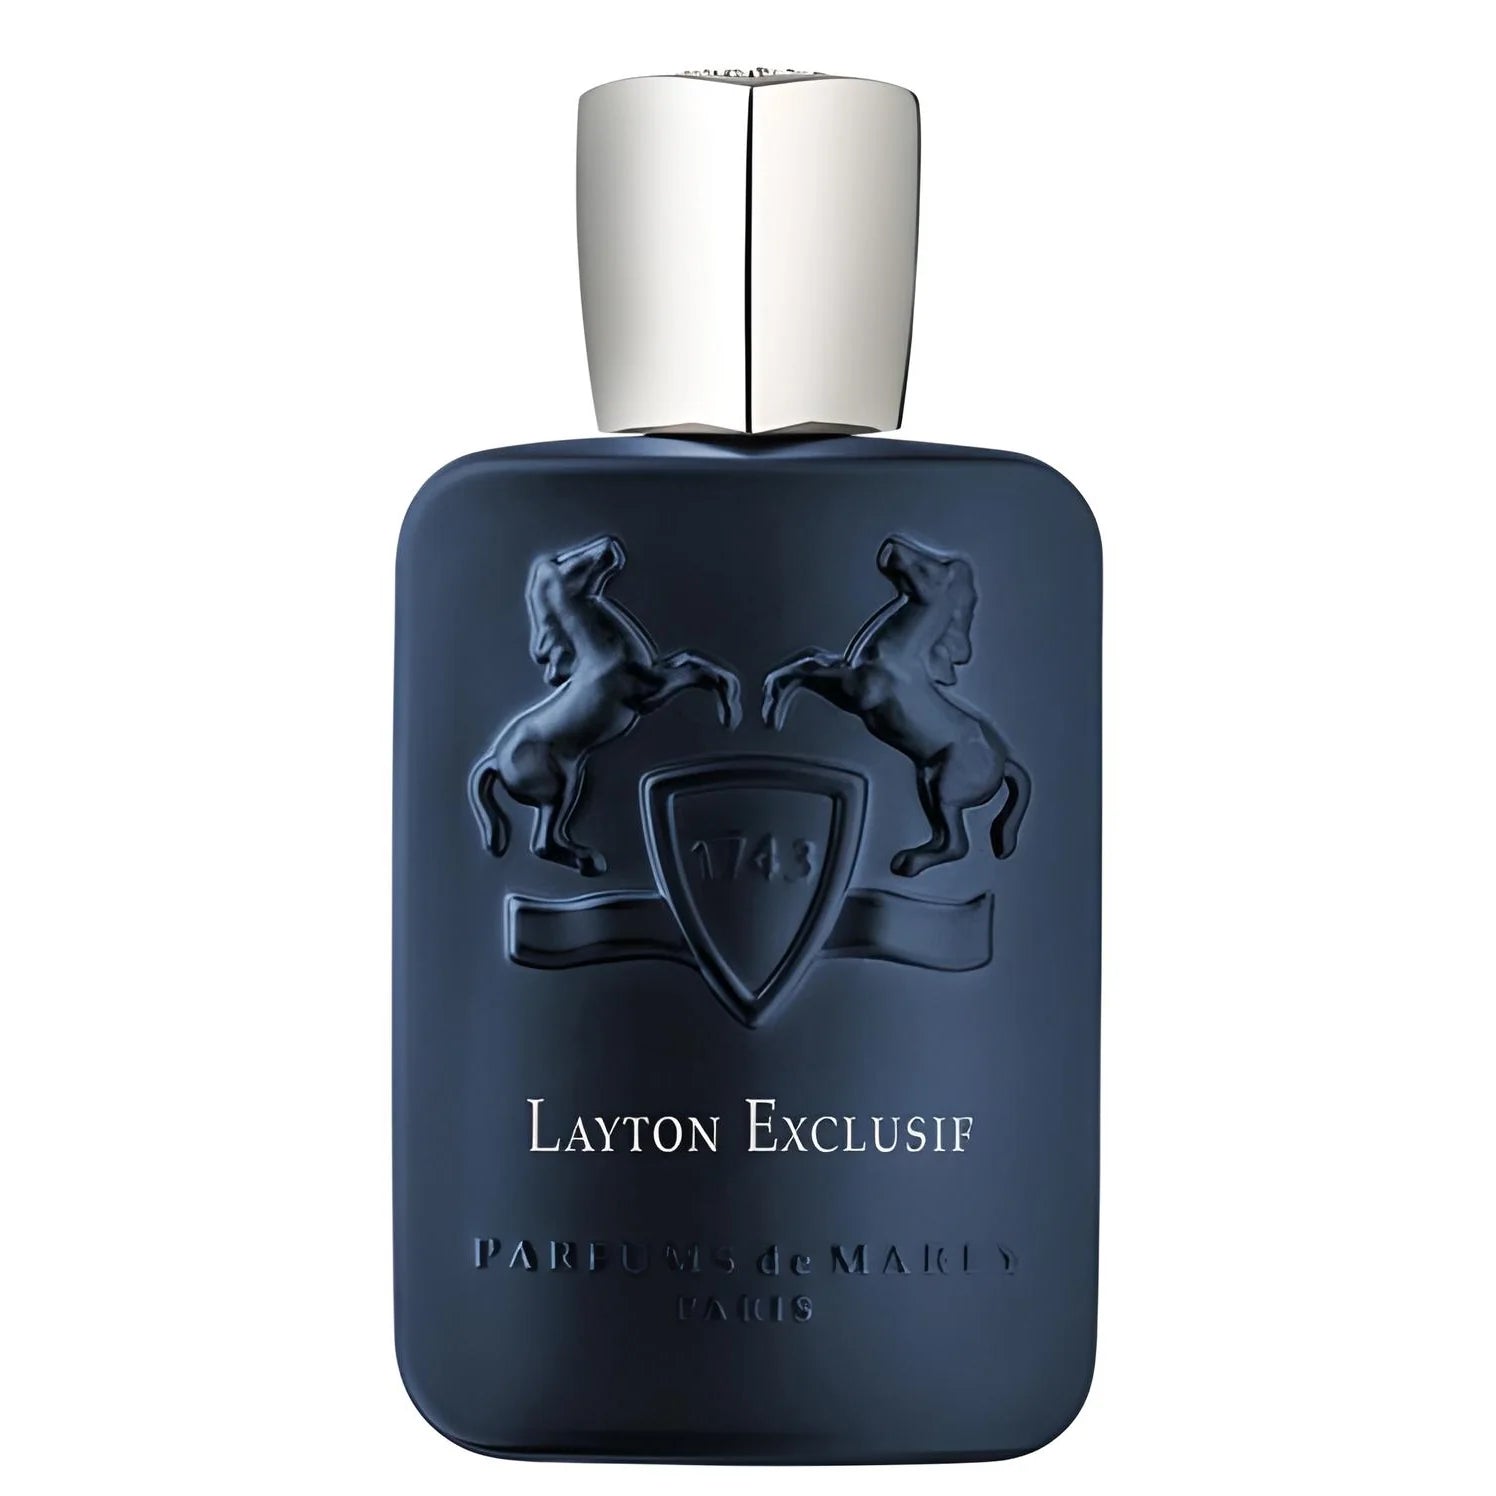 Layton Exclusif Eau de Parfum Eau de Parfum PARFUMS DE MARLY   